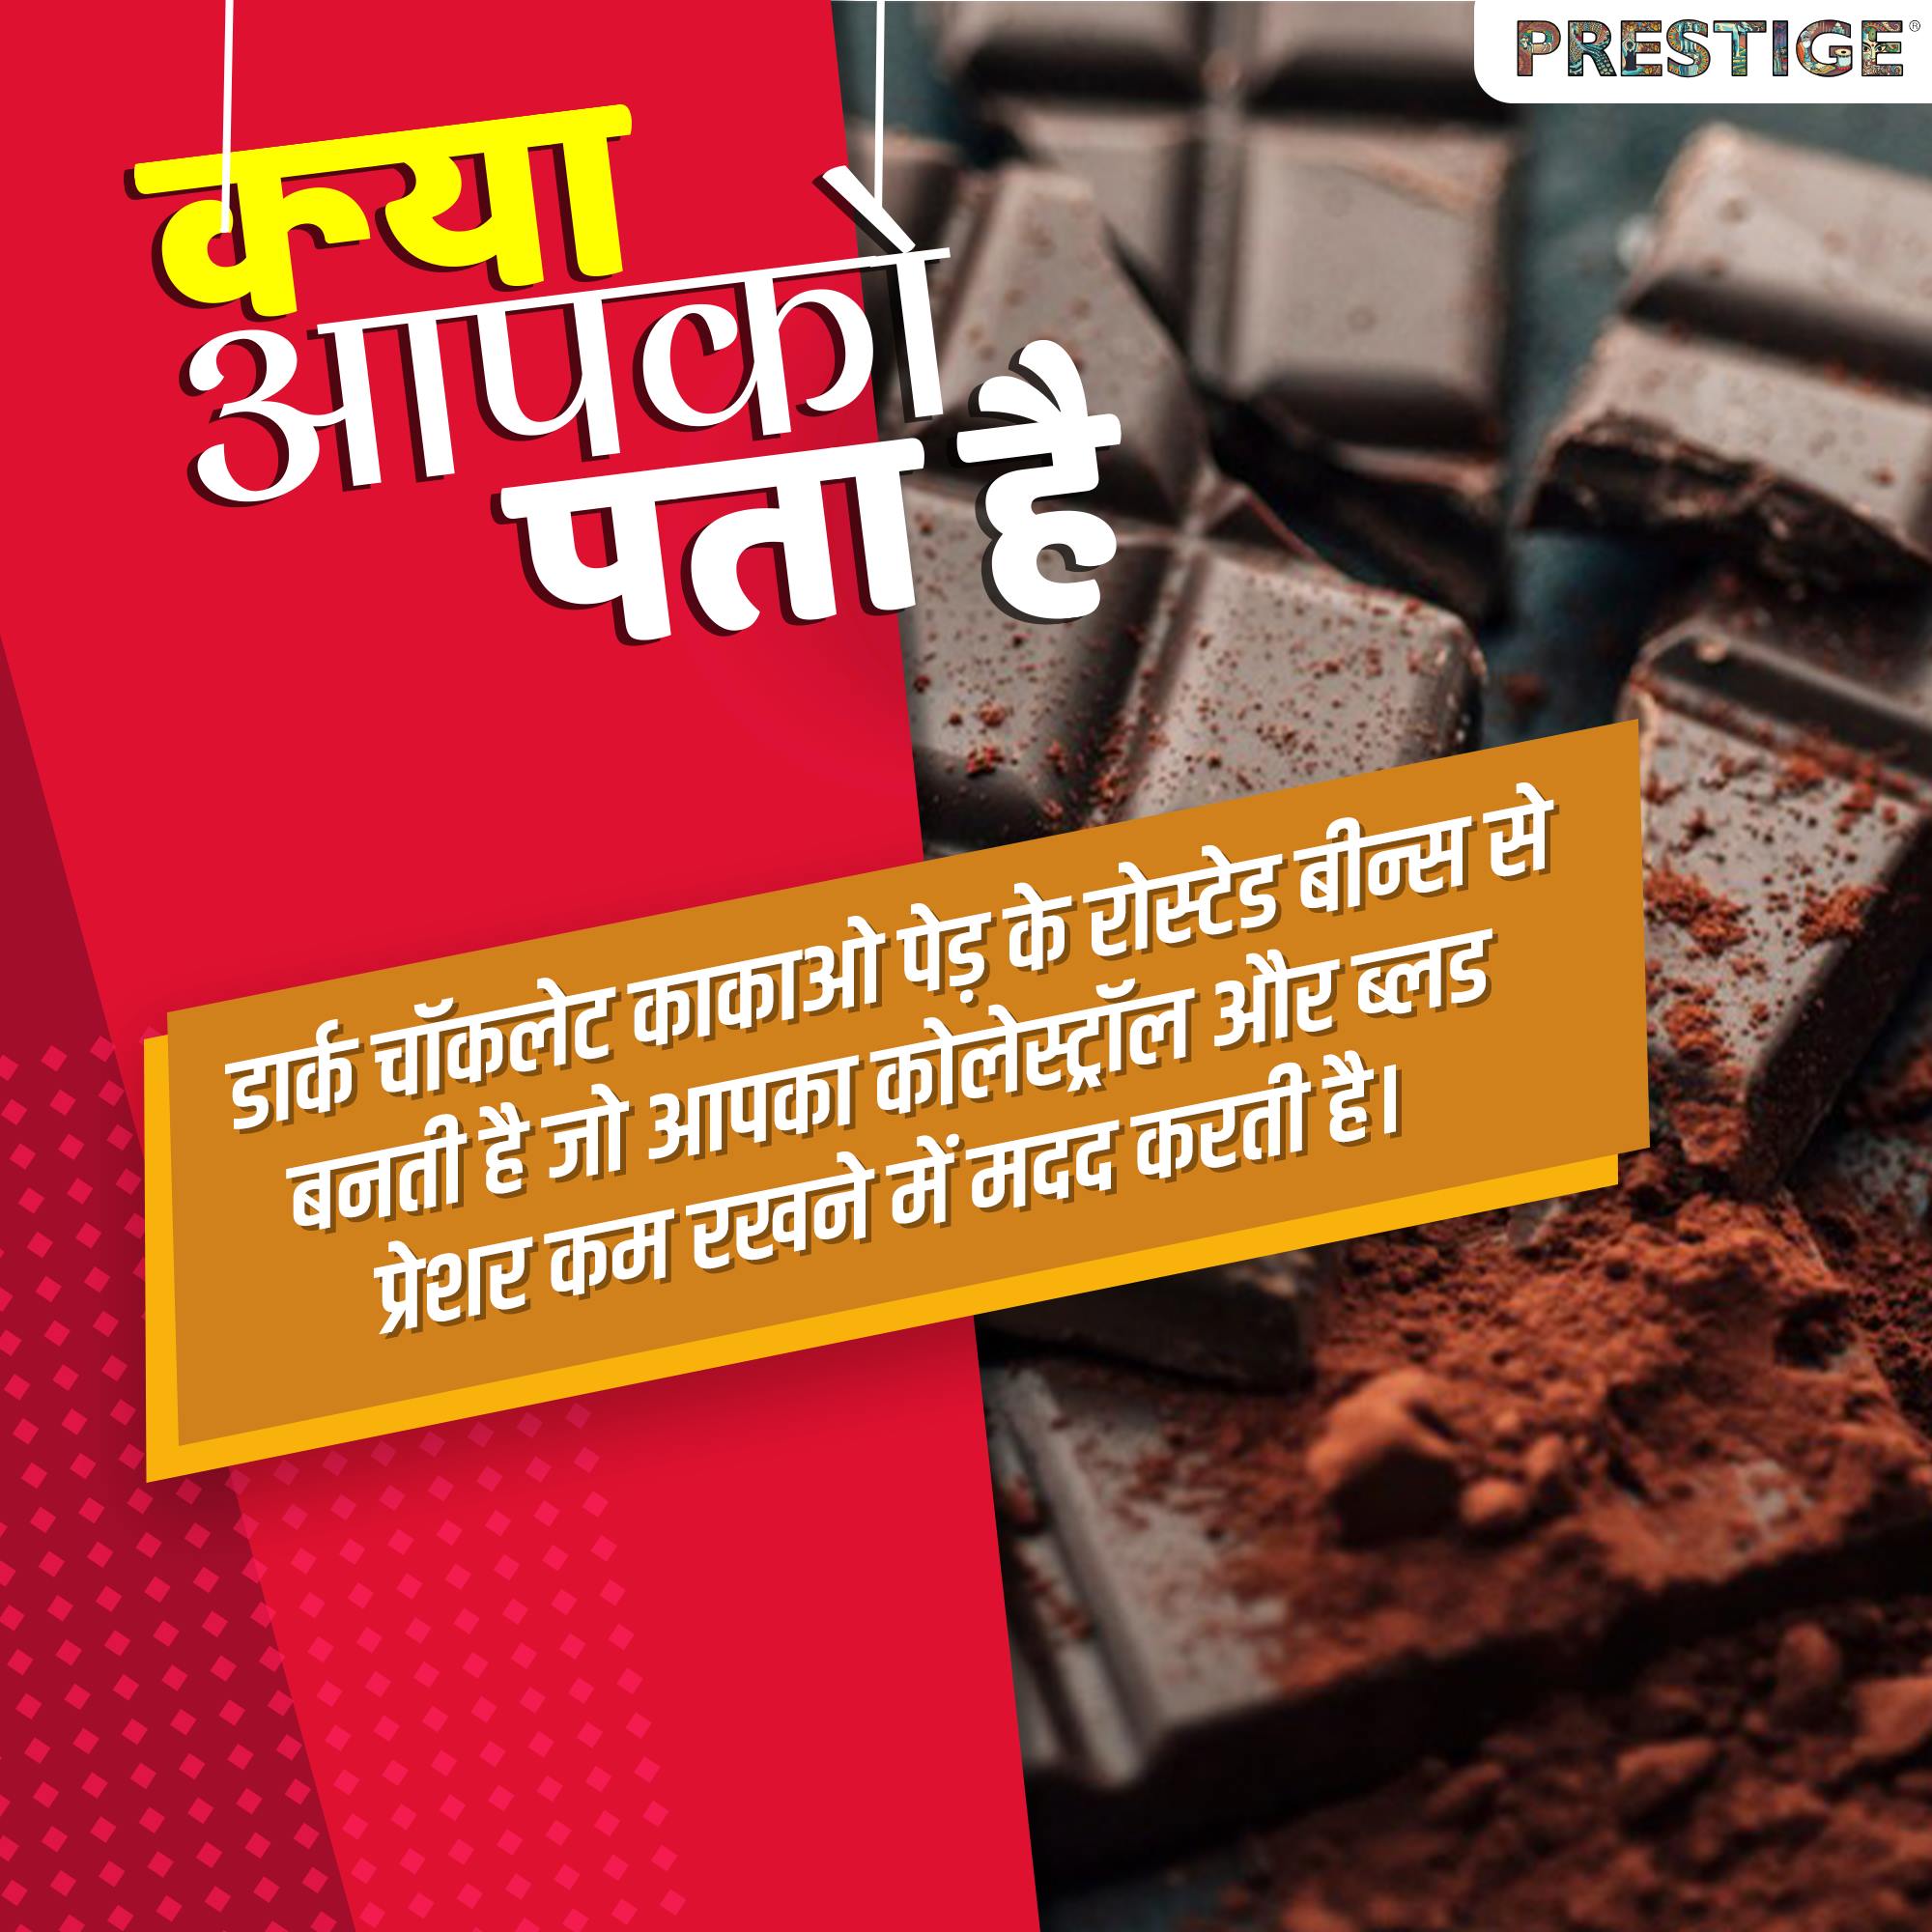 डार्क चॉकलेट (Dark chocolate) को रोजाना खाने से दिल की बीमारियां दूर रहती हैं।